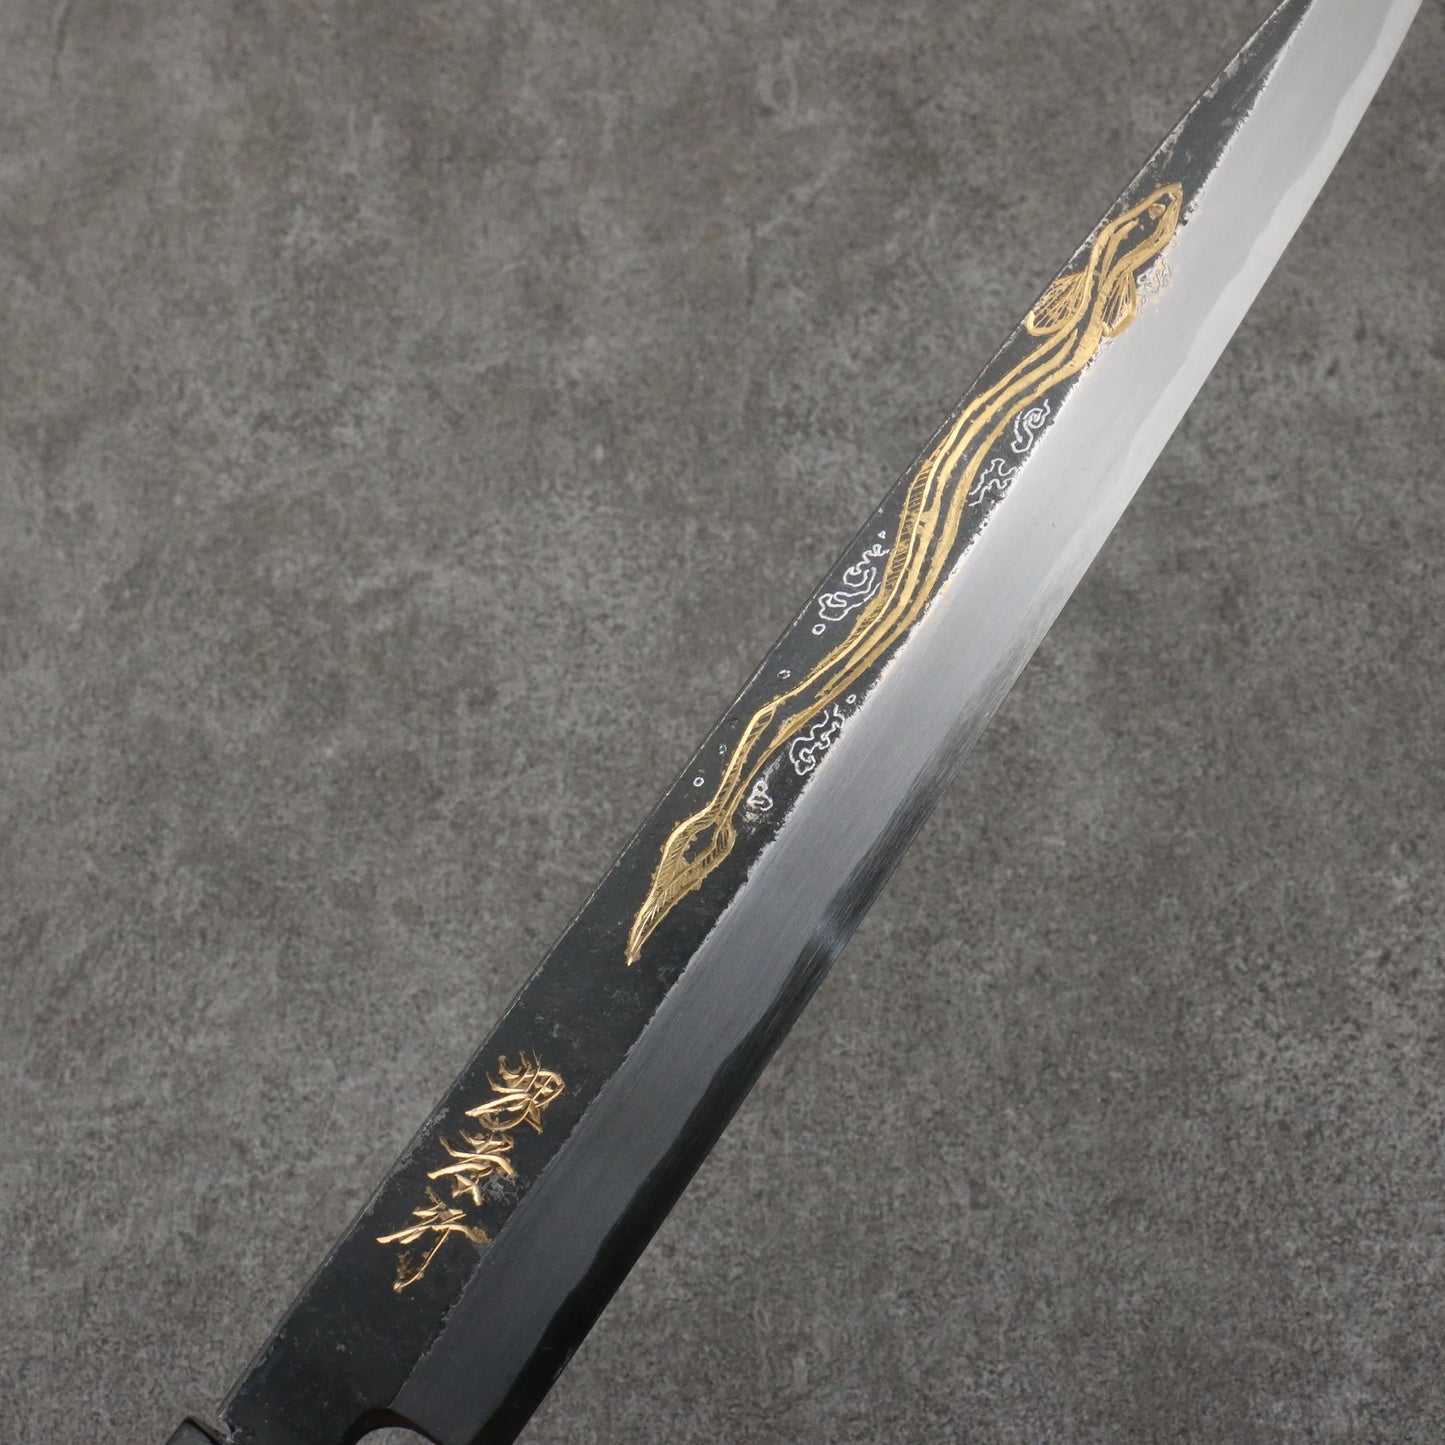 Free ship - Thương hiệu Sakai Takayuki Kubota khắc lươn vàng thép trắng đen hoàn thiện dao Yanagiba 300mm tay cầm gỗ Mun